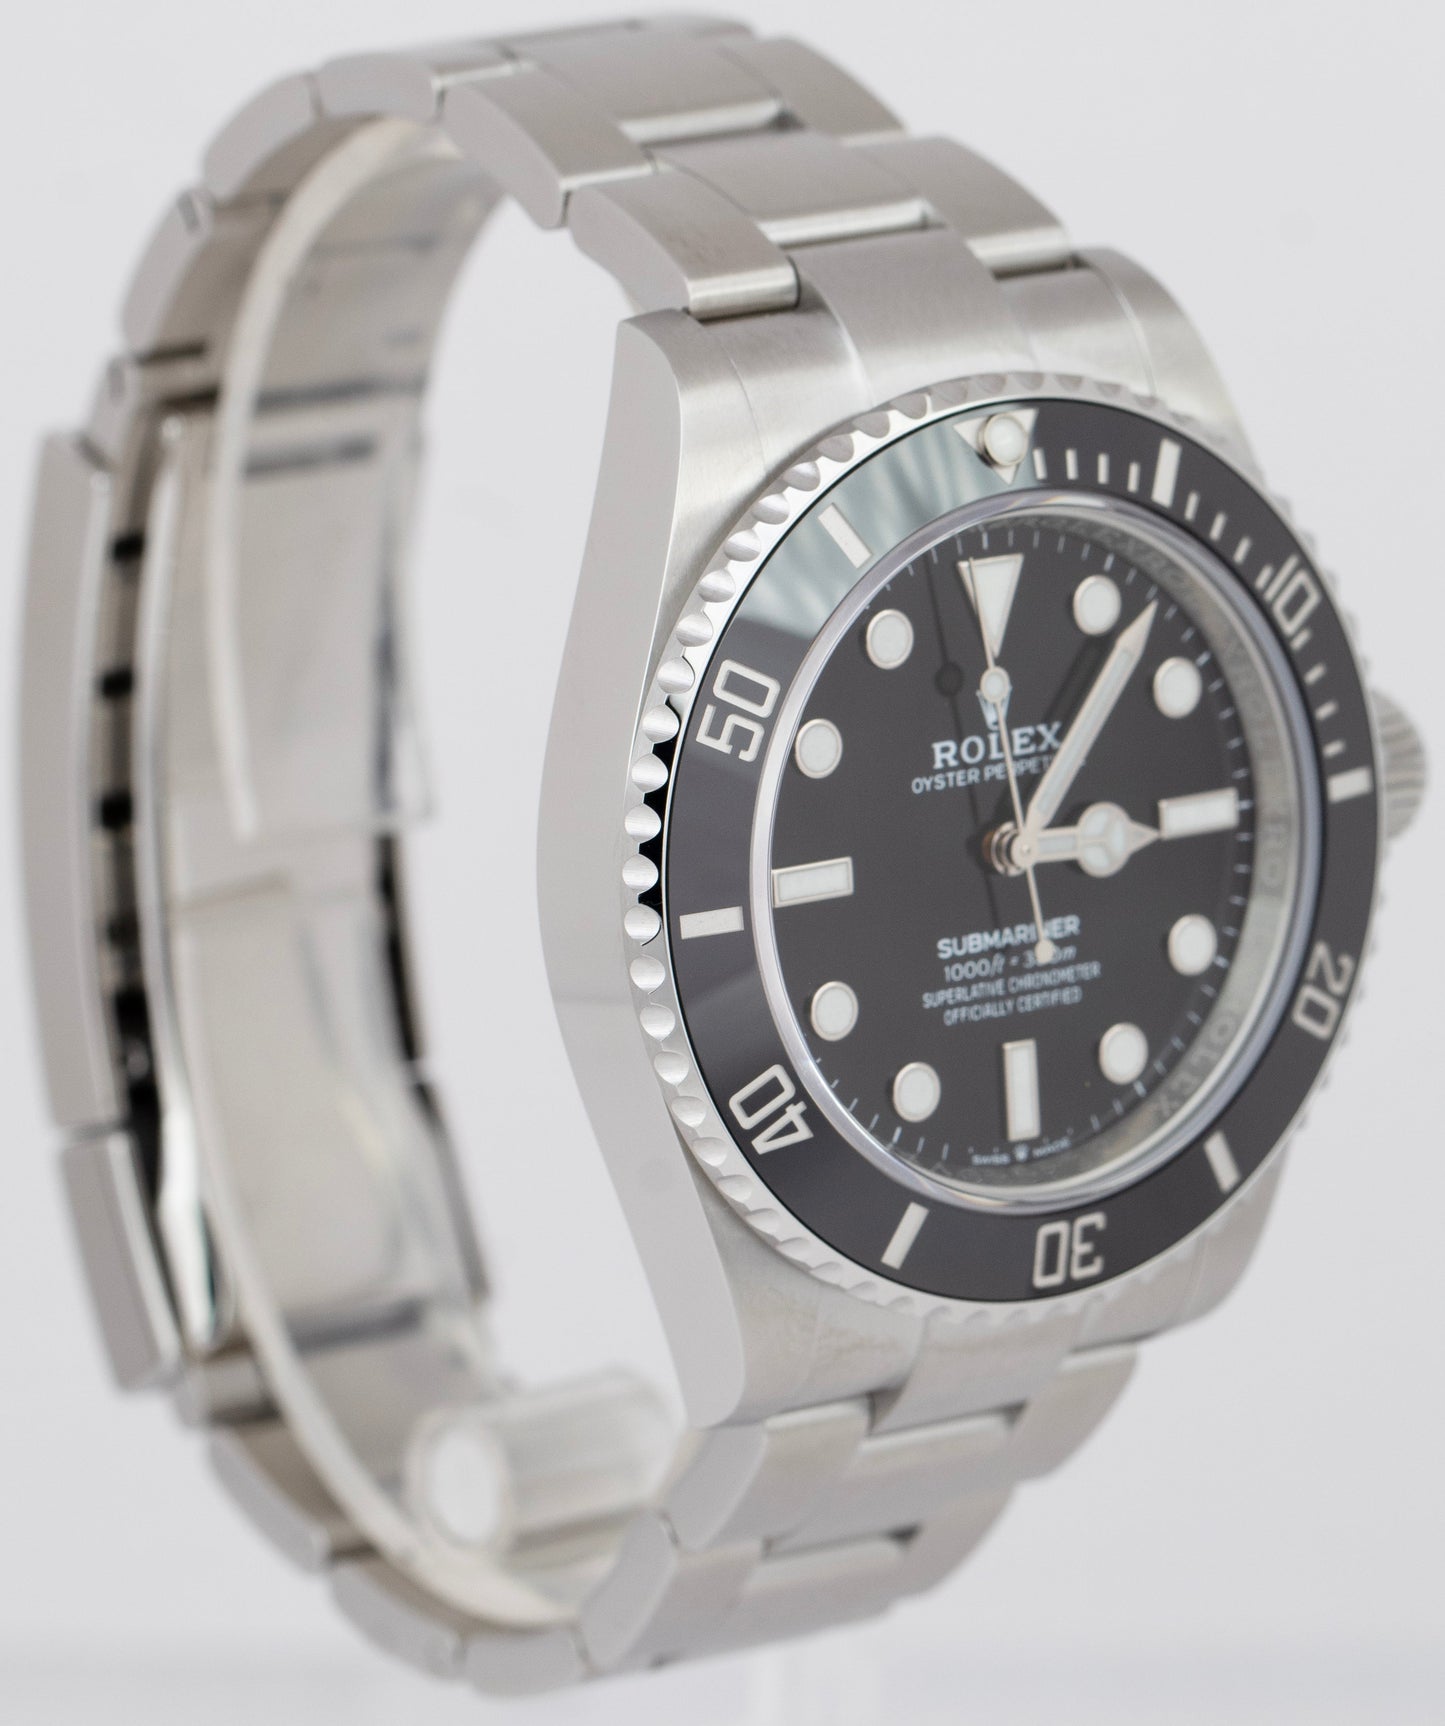 NEW NOV. 2022 Rolex Submariner No-Date Black Ceramic Steel 124060 LN 41mm Watch